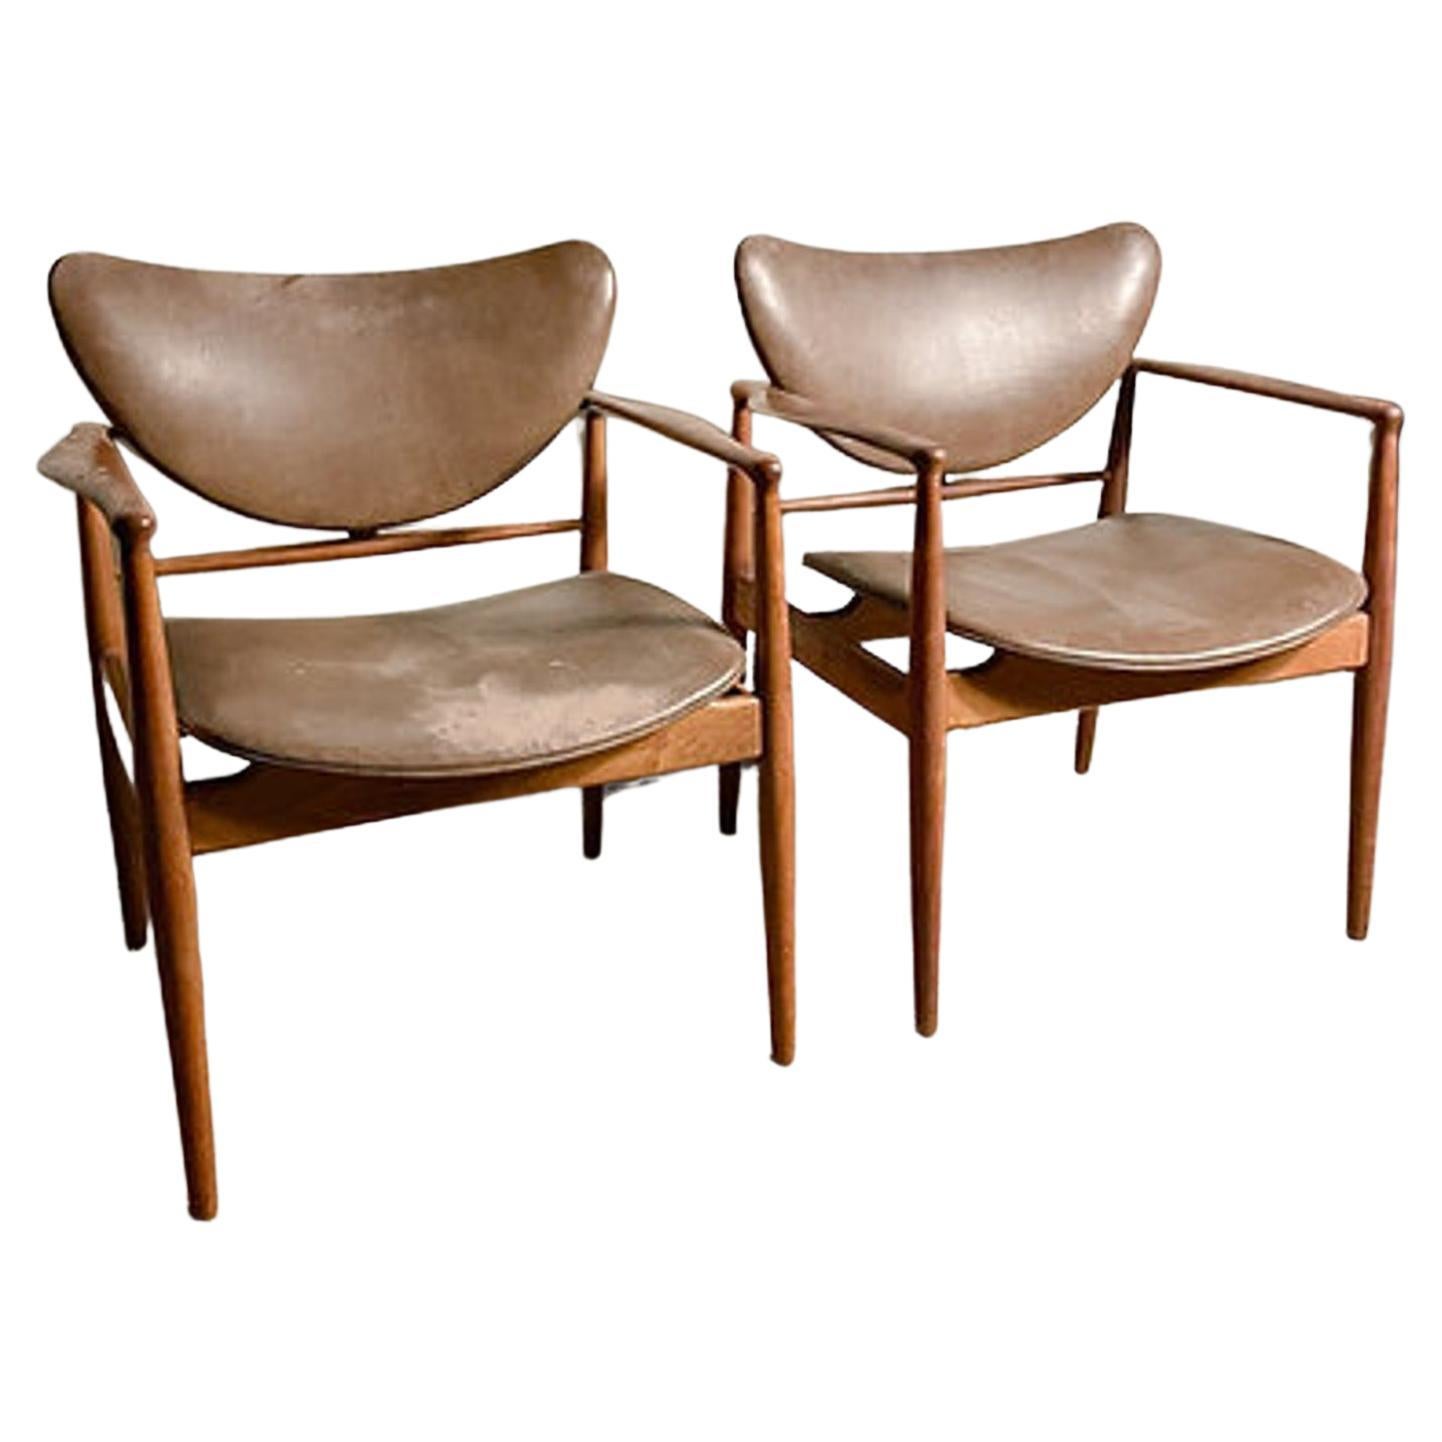 Finn Juhl 48 Chairs by Baker in Walnut